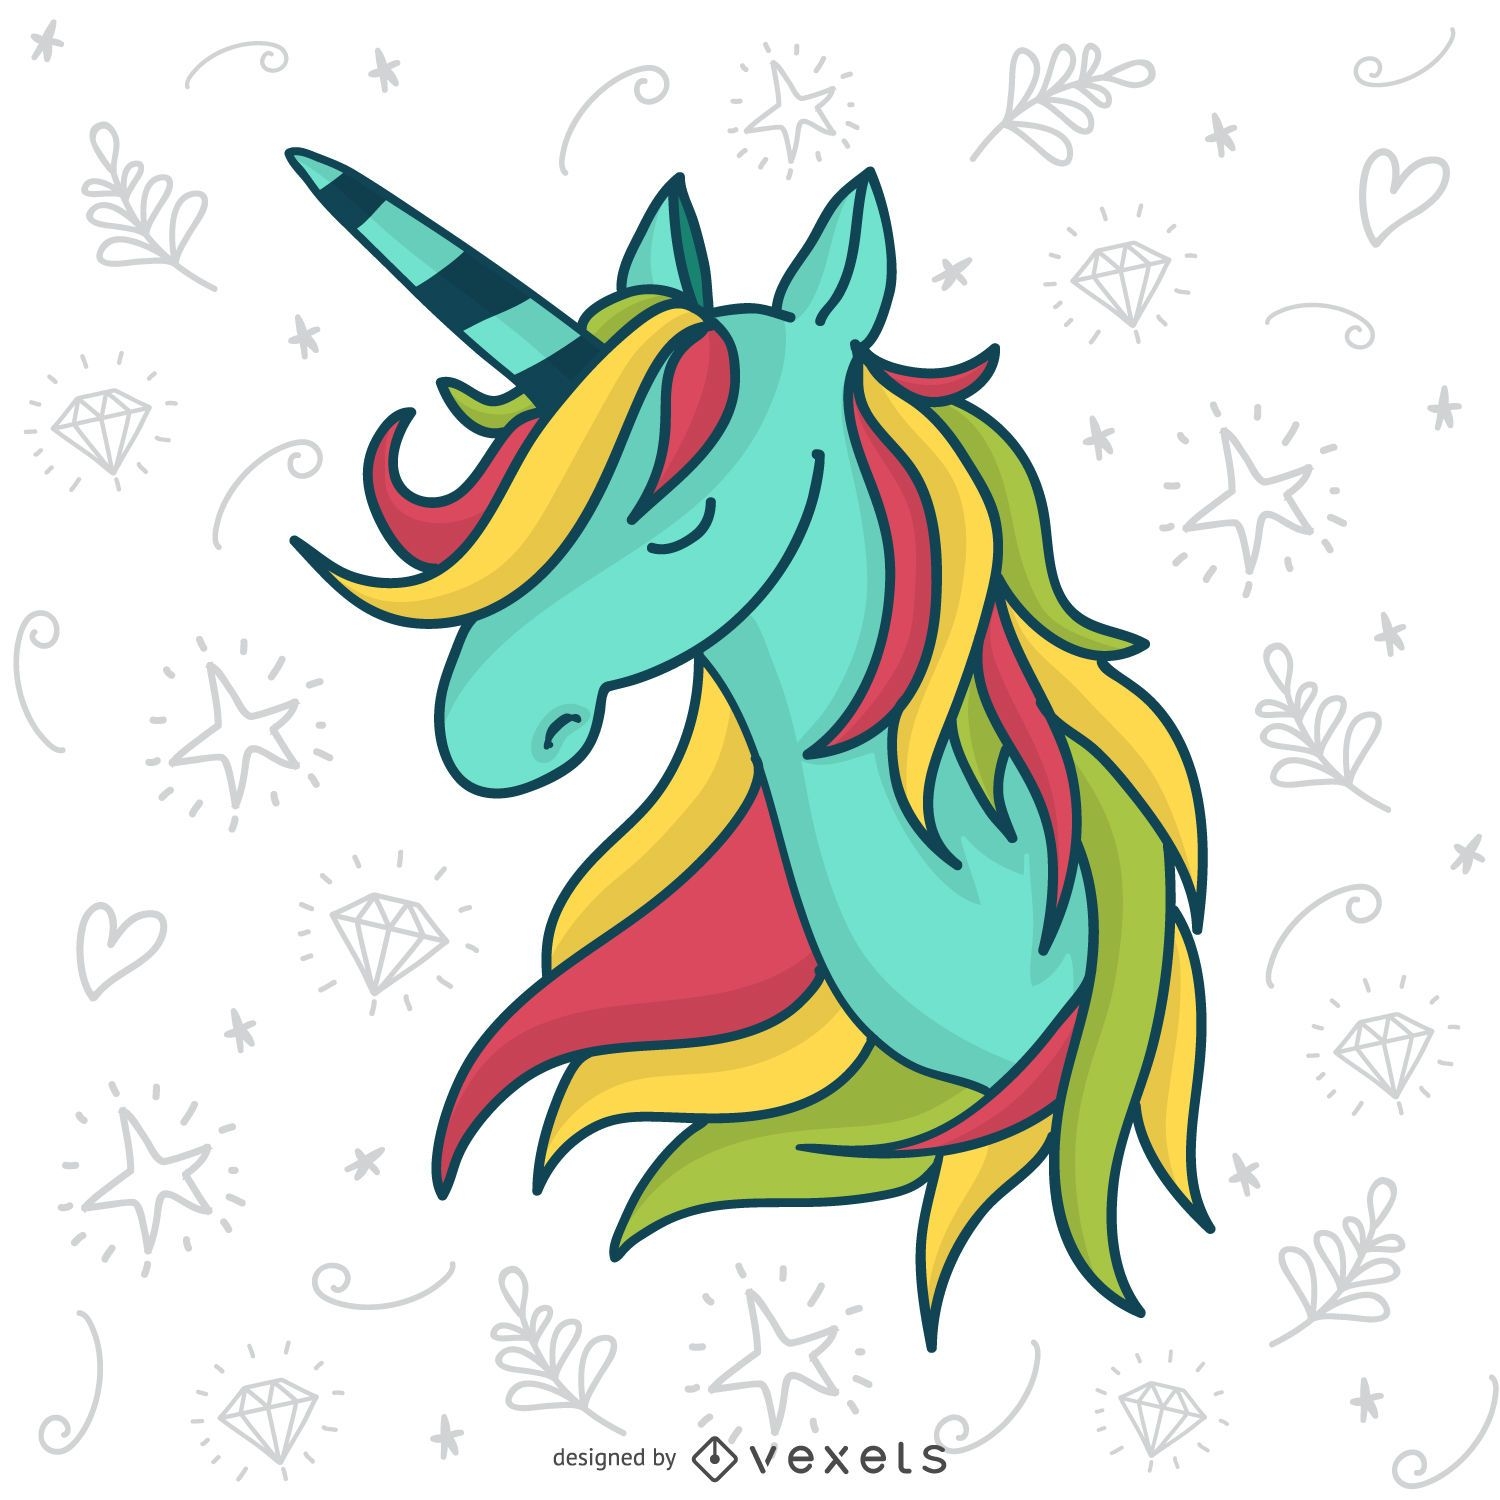 Dibujado a mano ilustración de unicornio